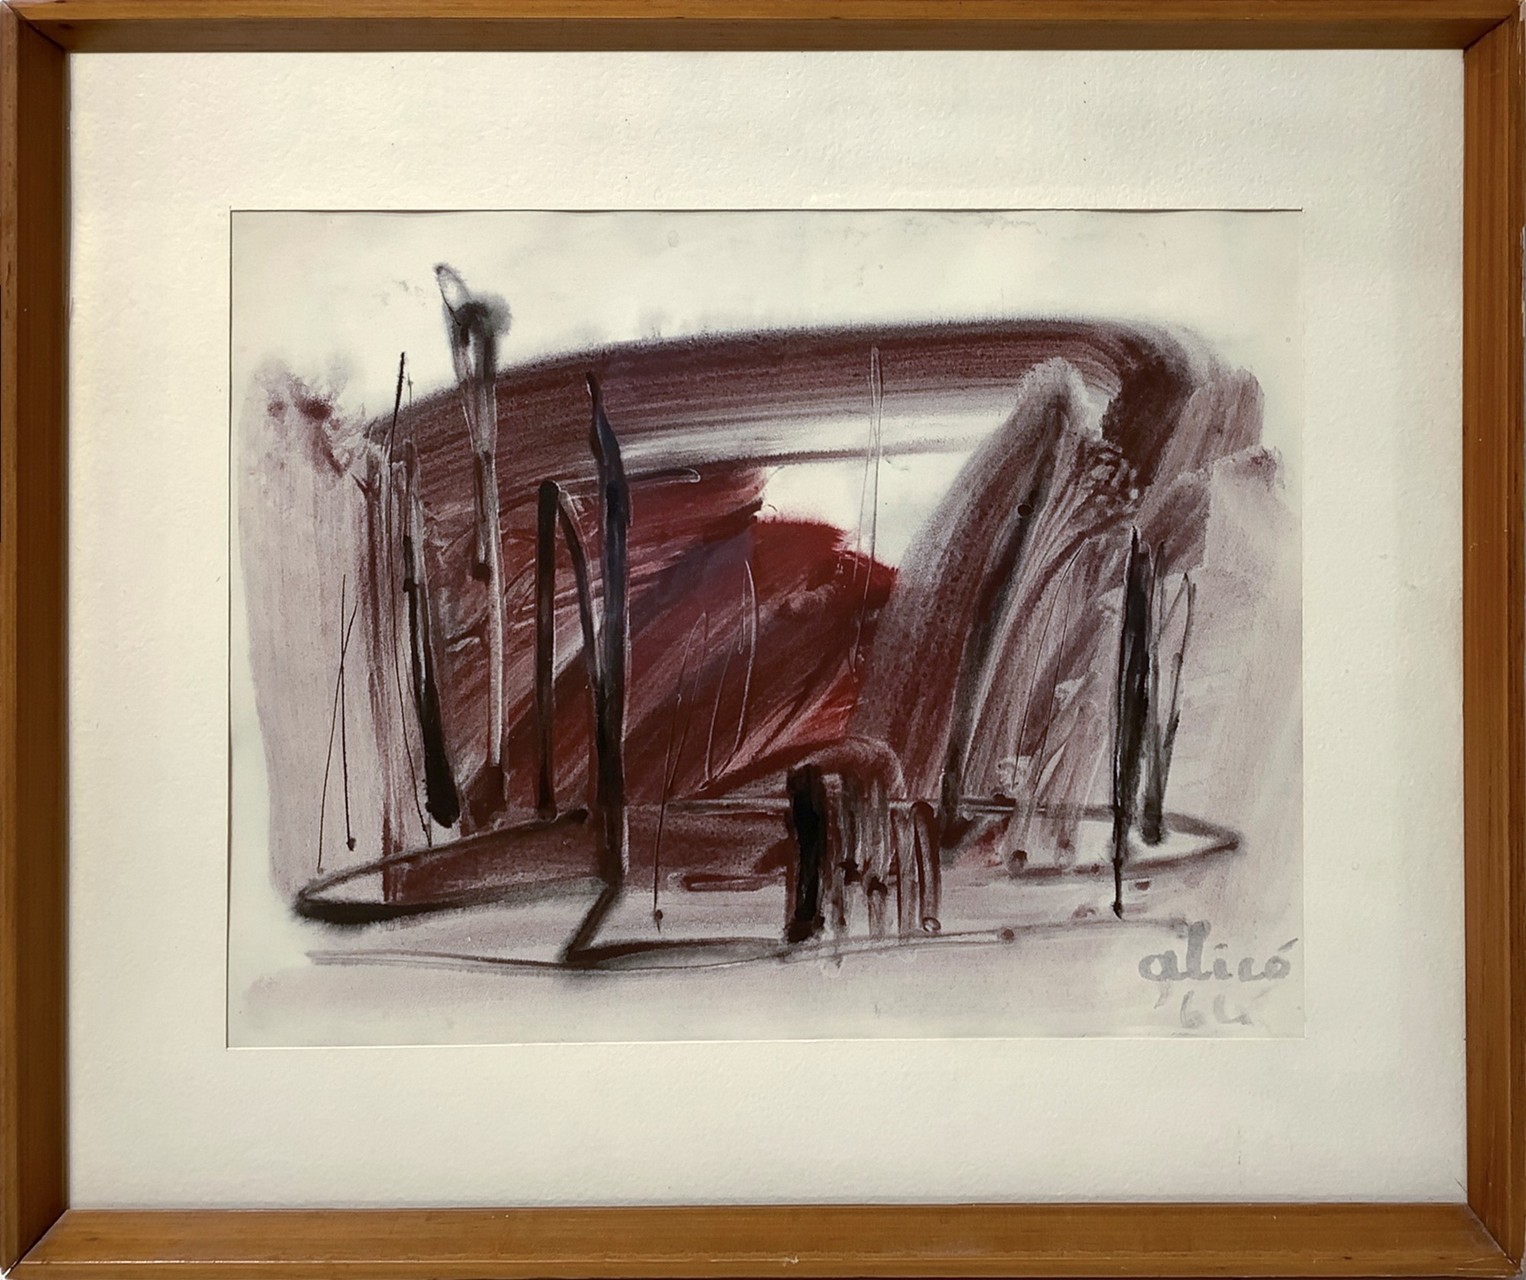 Alicò, Giovanni (Catania 1906-Milano 1971) - Abstract figuration